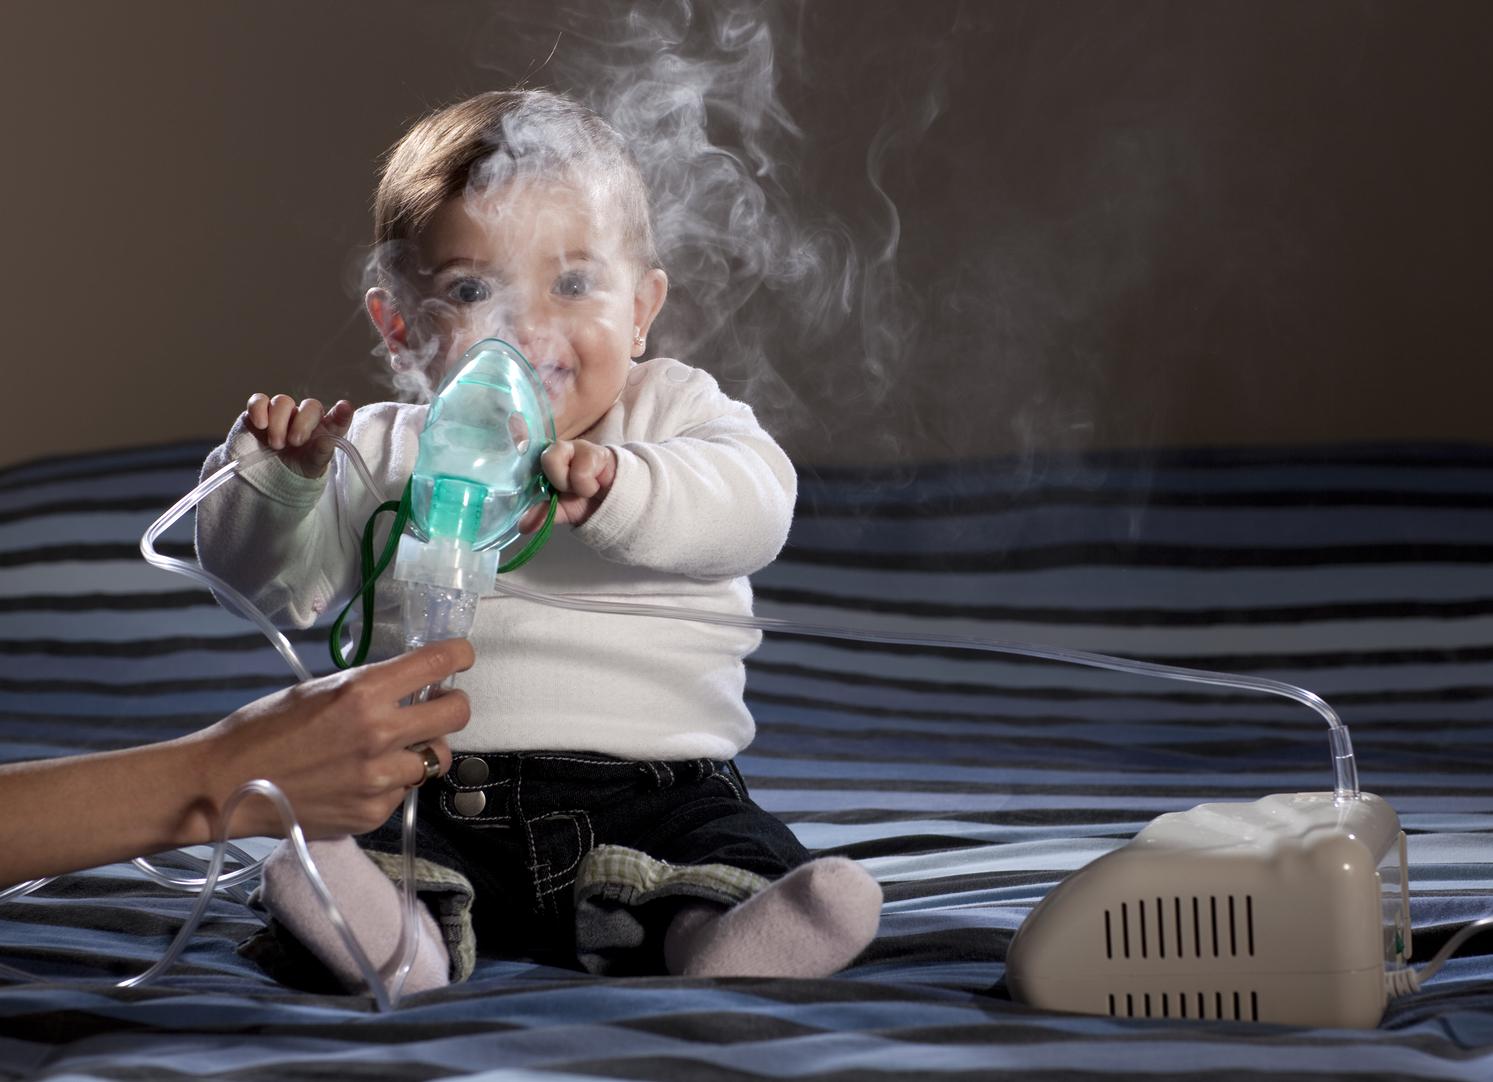 Comment réagir face à une crise d'asthme